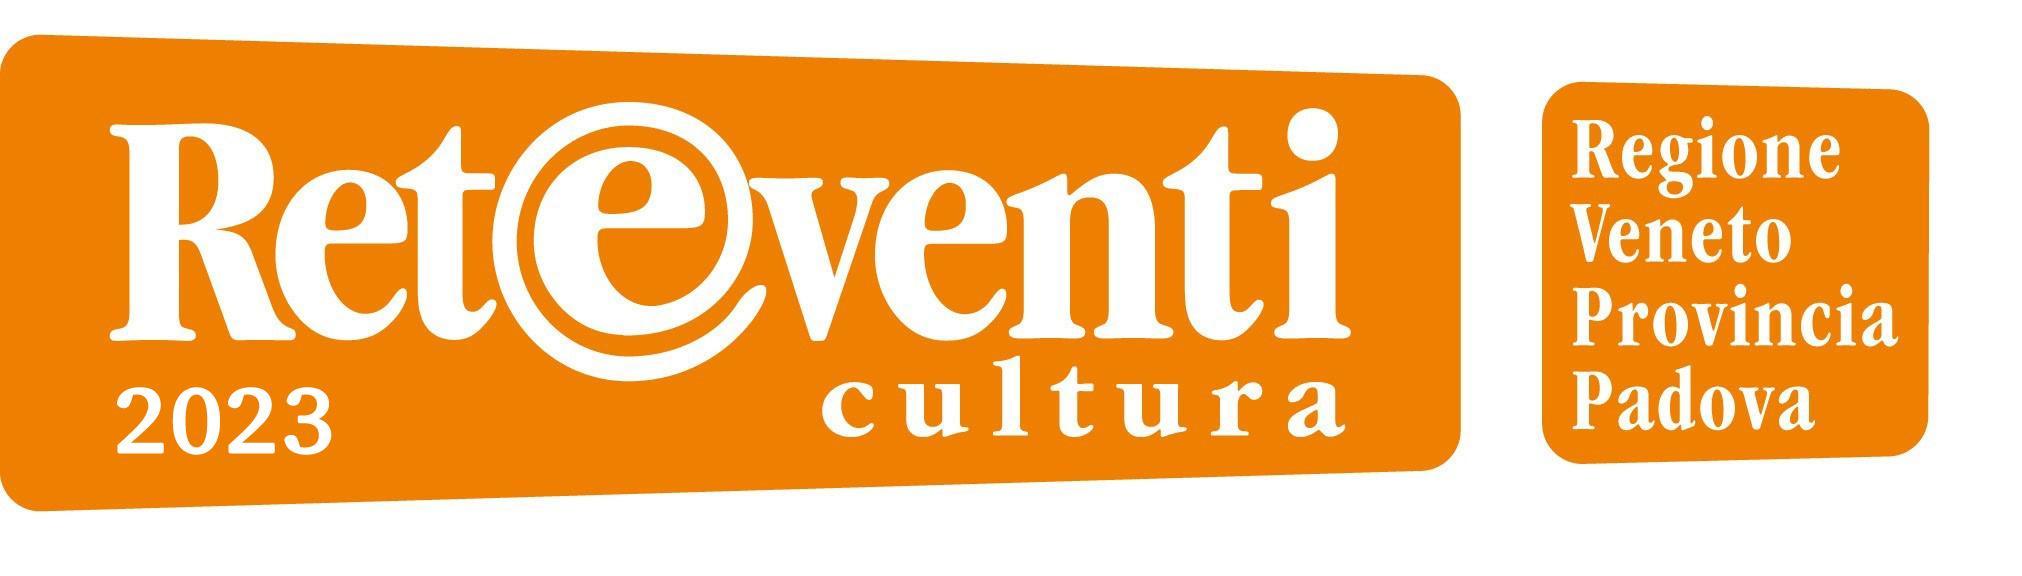 logo Reteventi 2023